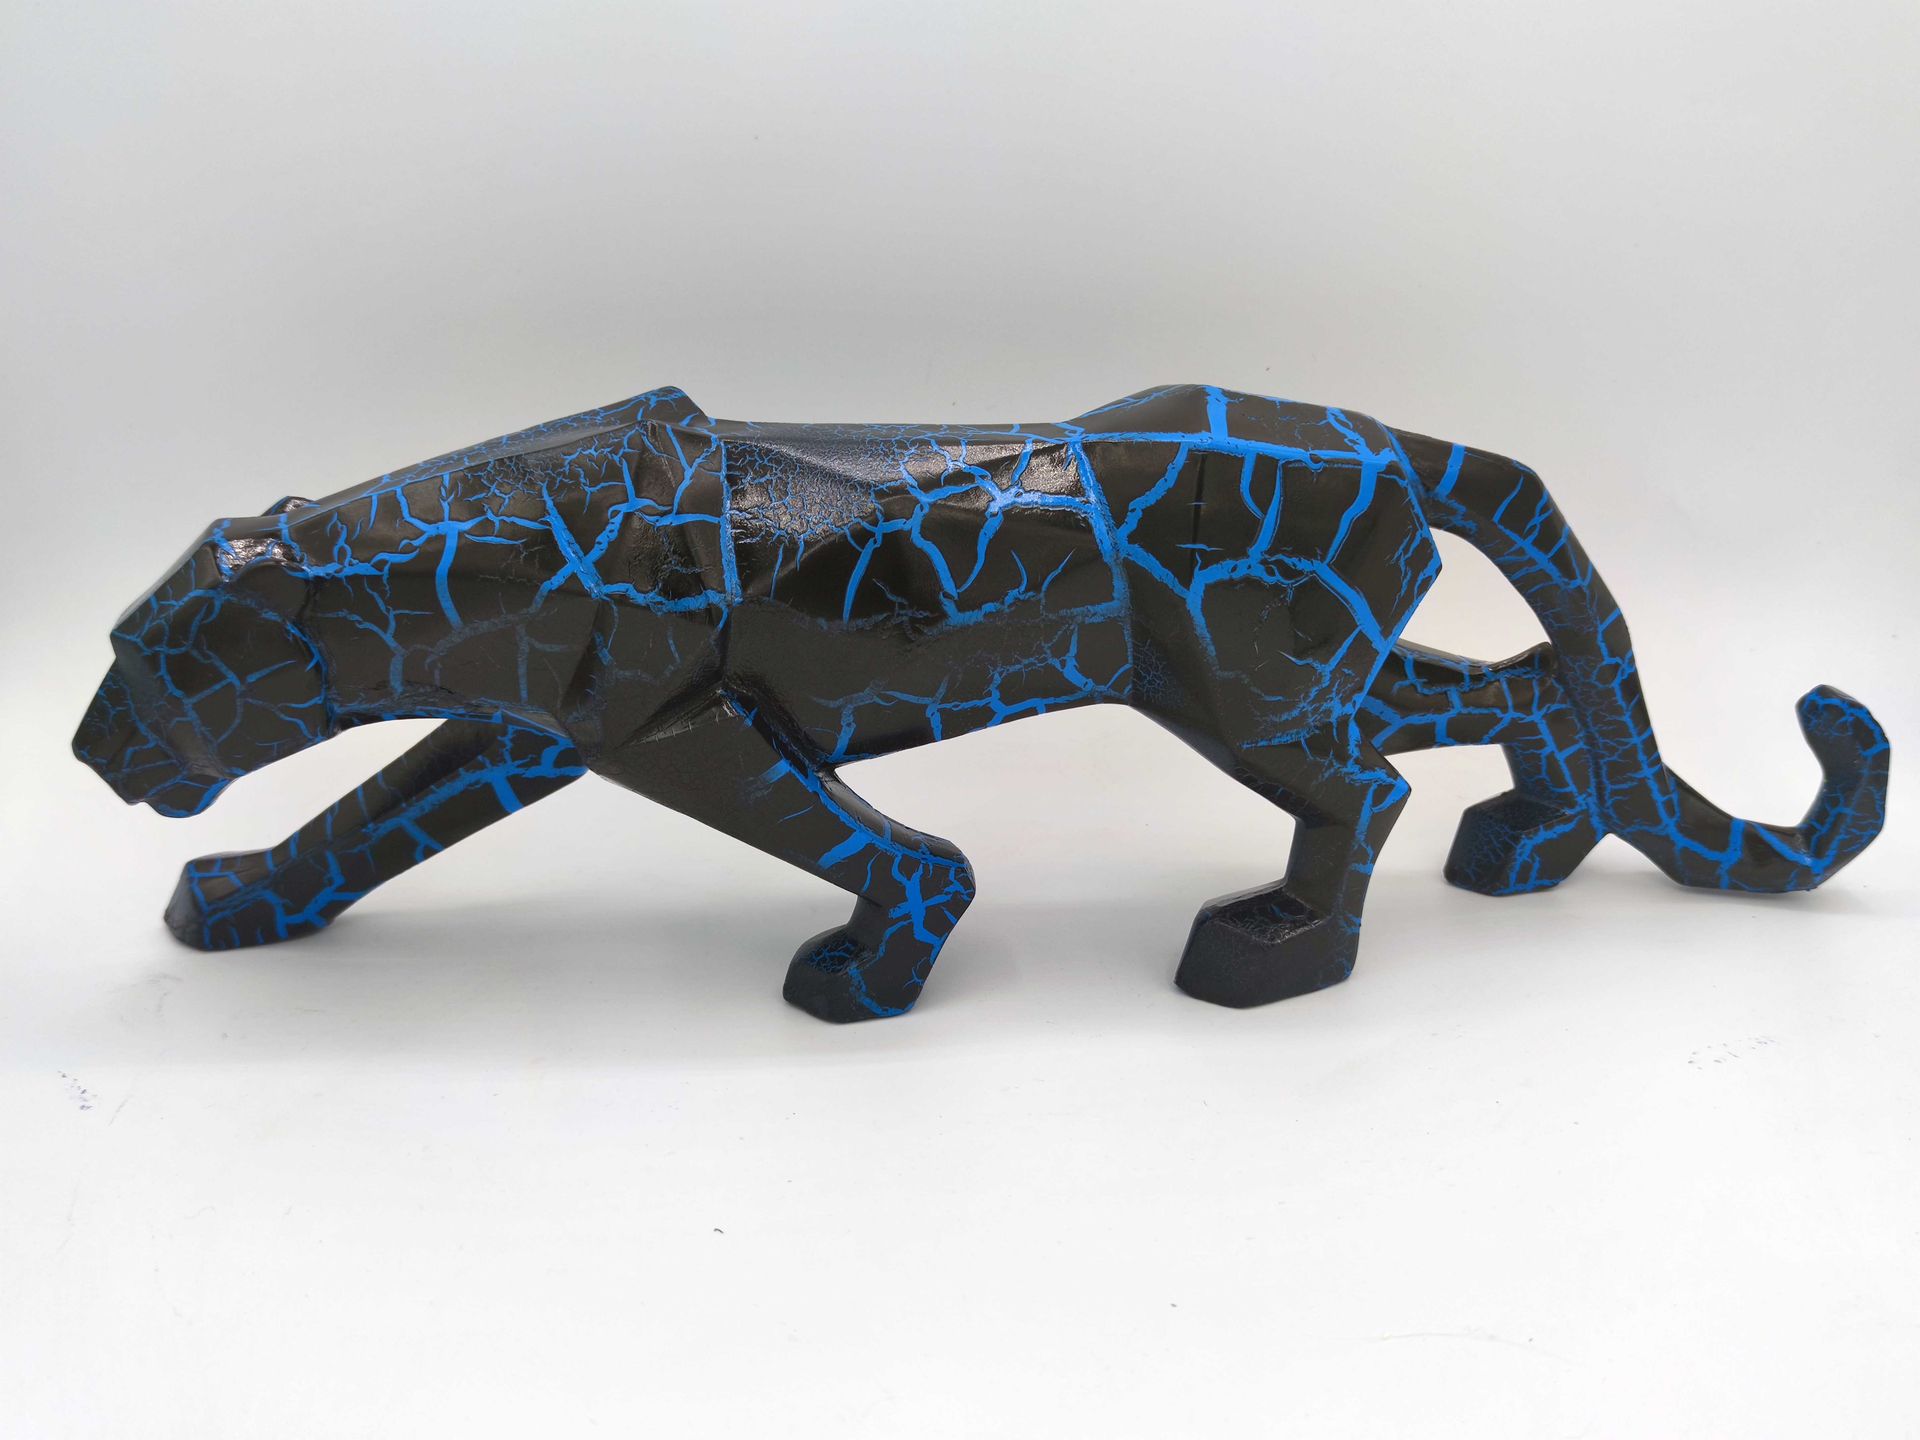 DED2008 DED2008

裂纹黑色和蓝色豹子，2021年

树脂雕塑

丙烯酸墨水和喷漆

尺寸：13 x 43 x 8厘米

该作品已被上了两层清漆以&hellip;